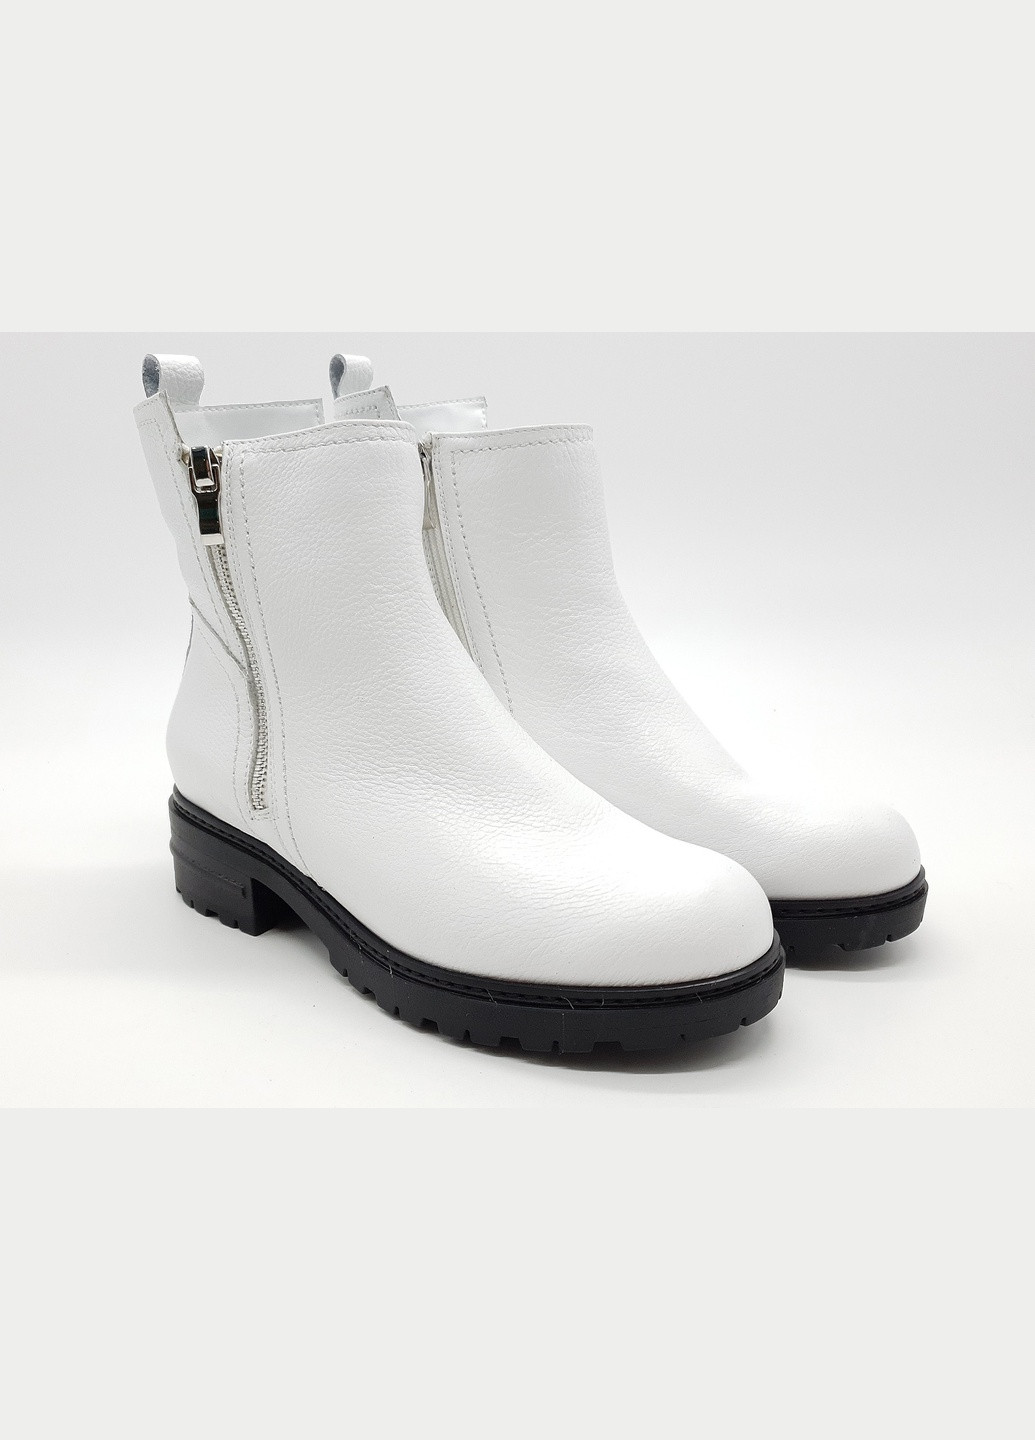 Осенние женские ботинки зимние белые кожаные p-11-5 26 см (р) patterns